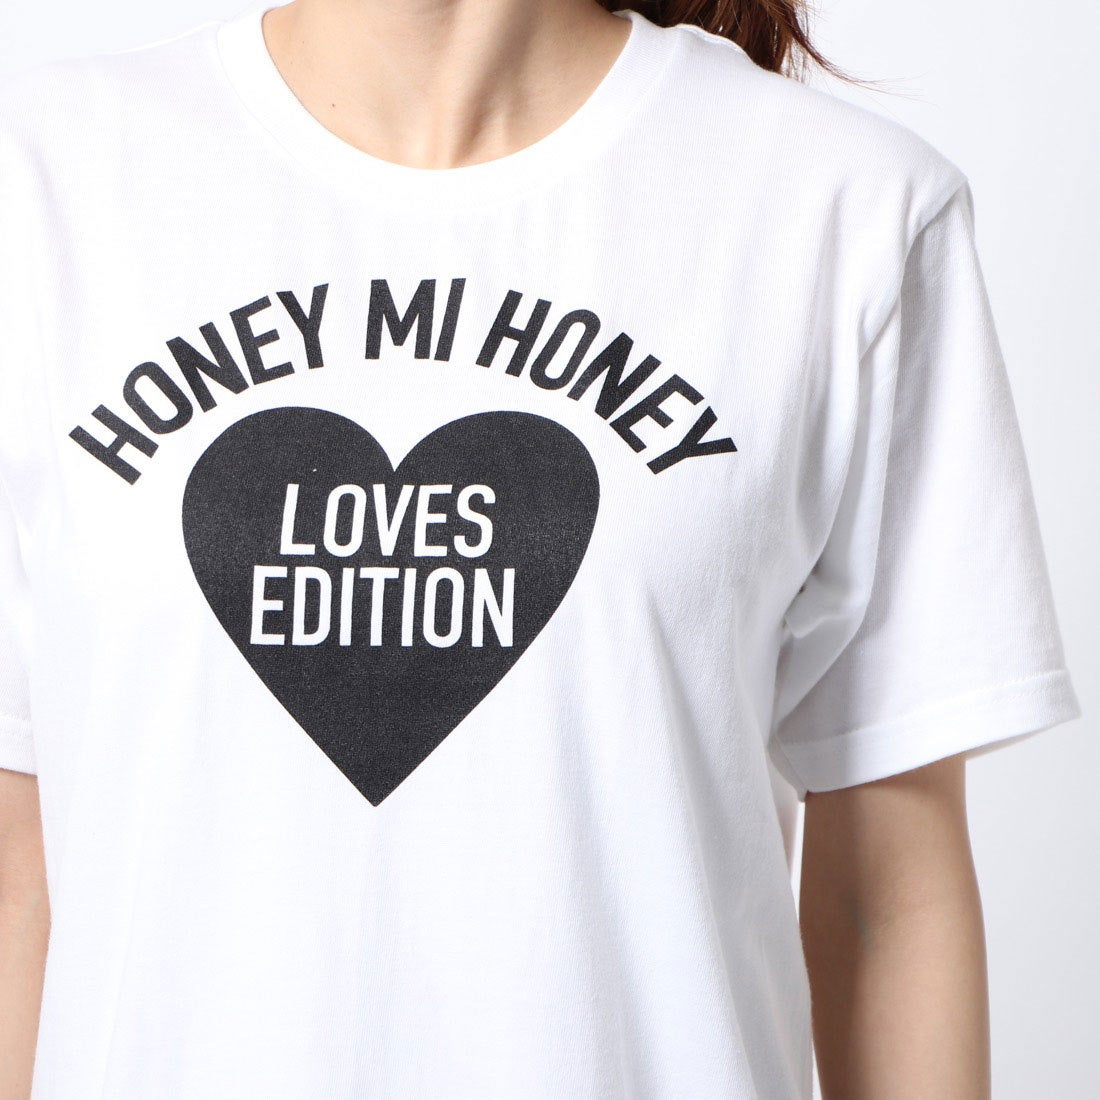 HONEY MI HONEY honeyロゴTシャツ